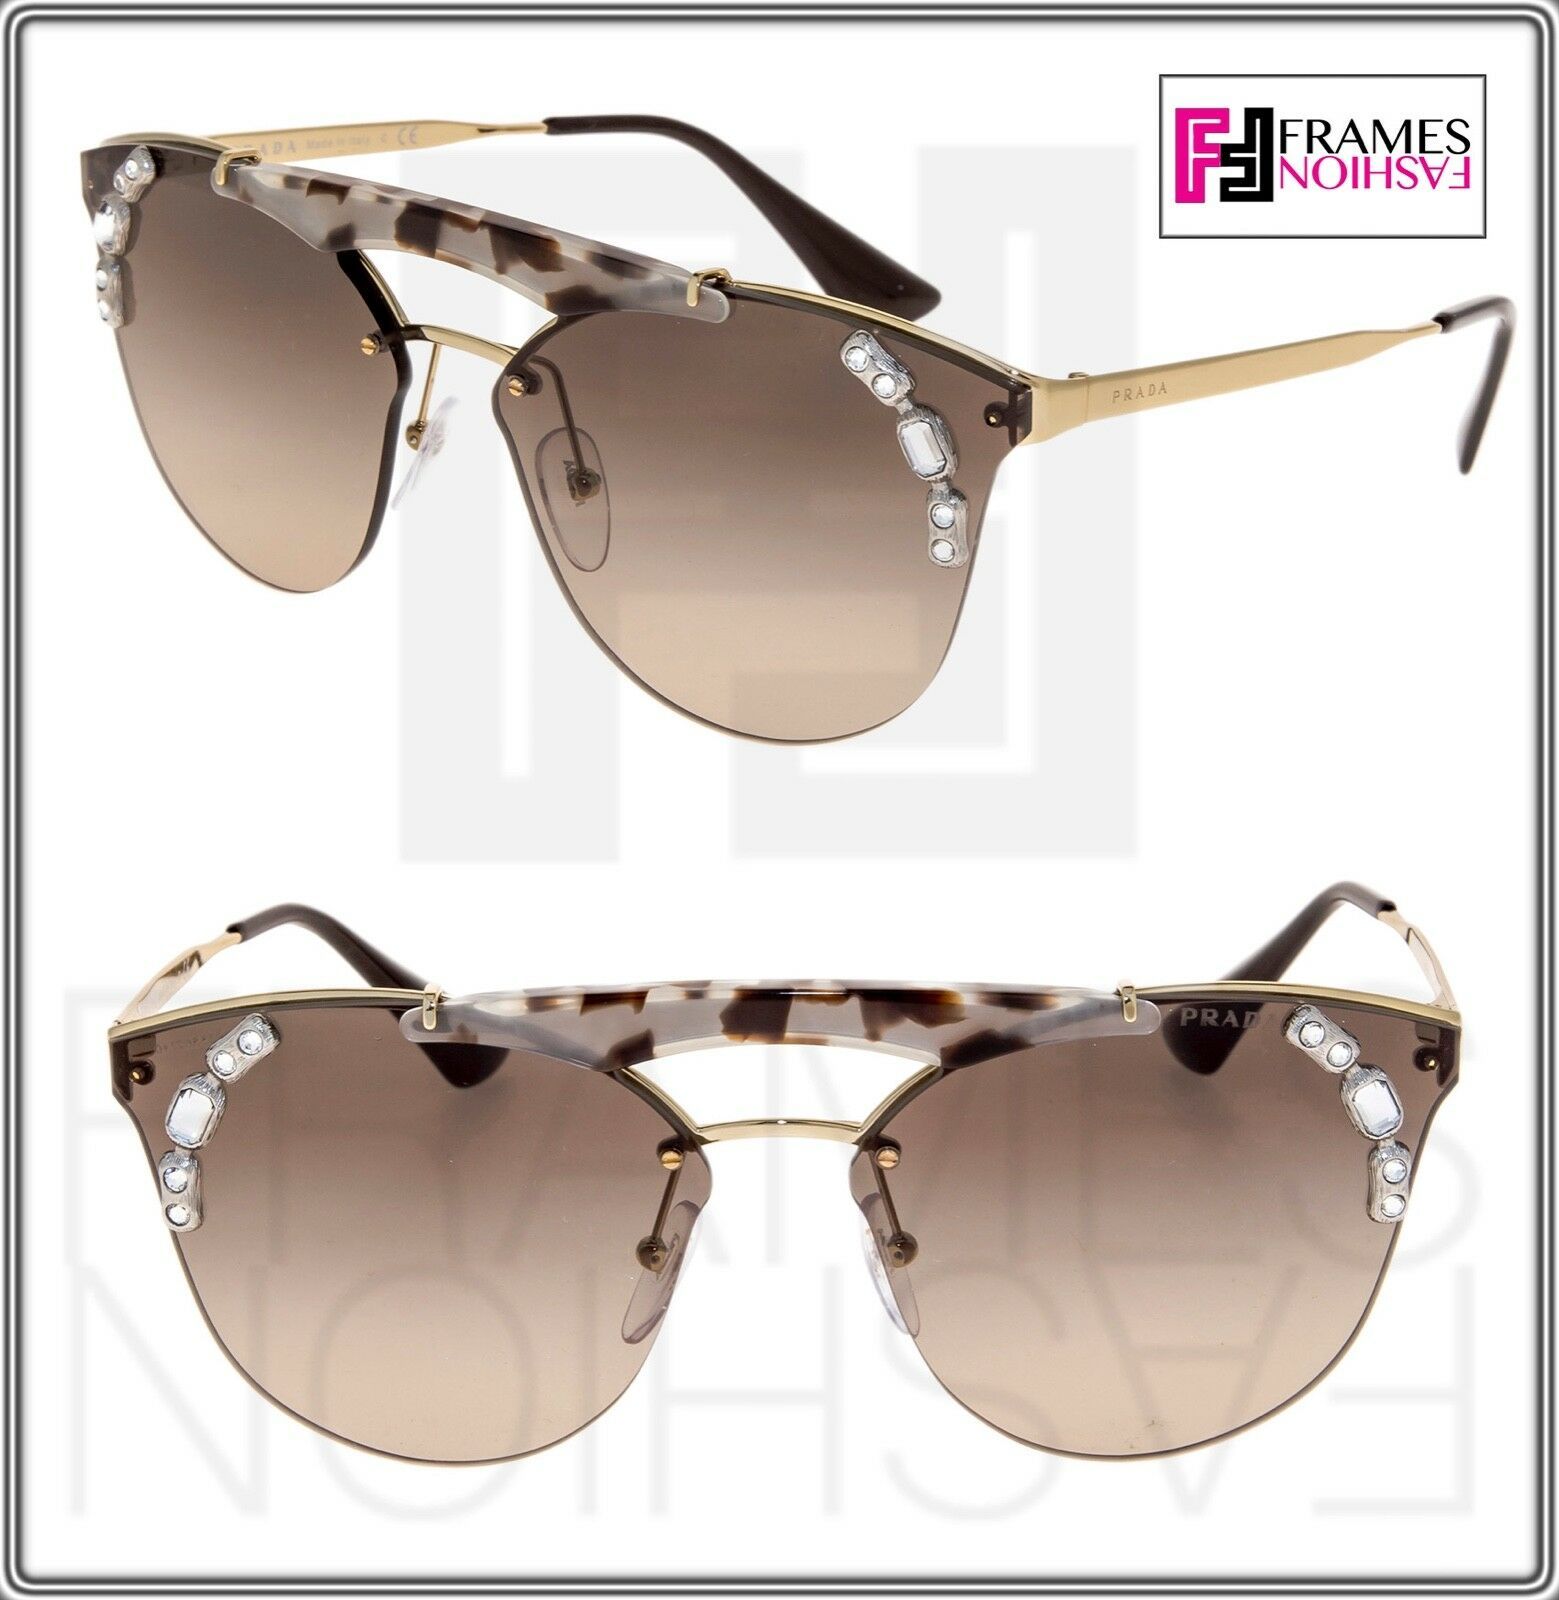 PRADA 53U ORNATE Shield Brow Bar Jewel Sunglasses Gold Chalk White Brown PR53US